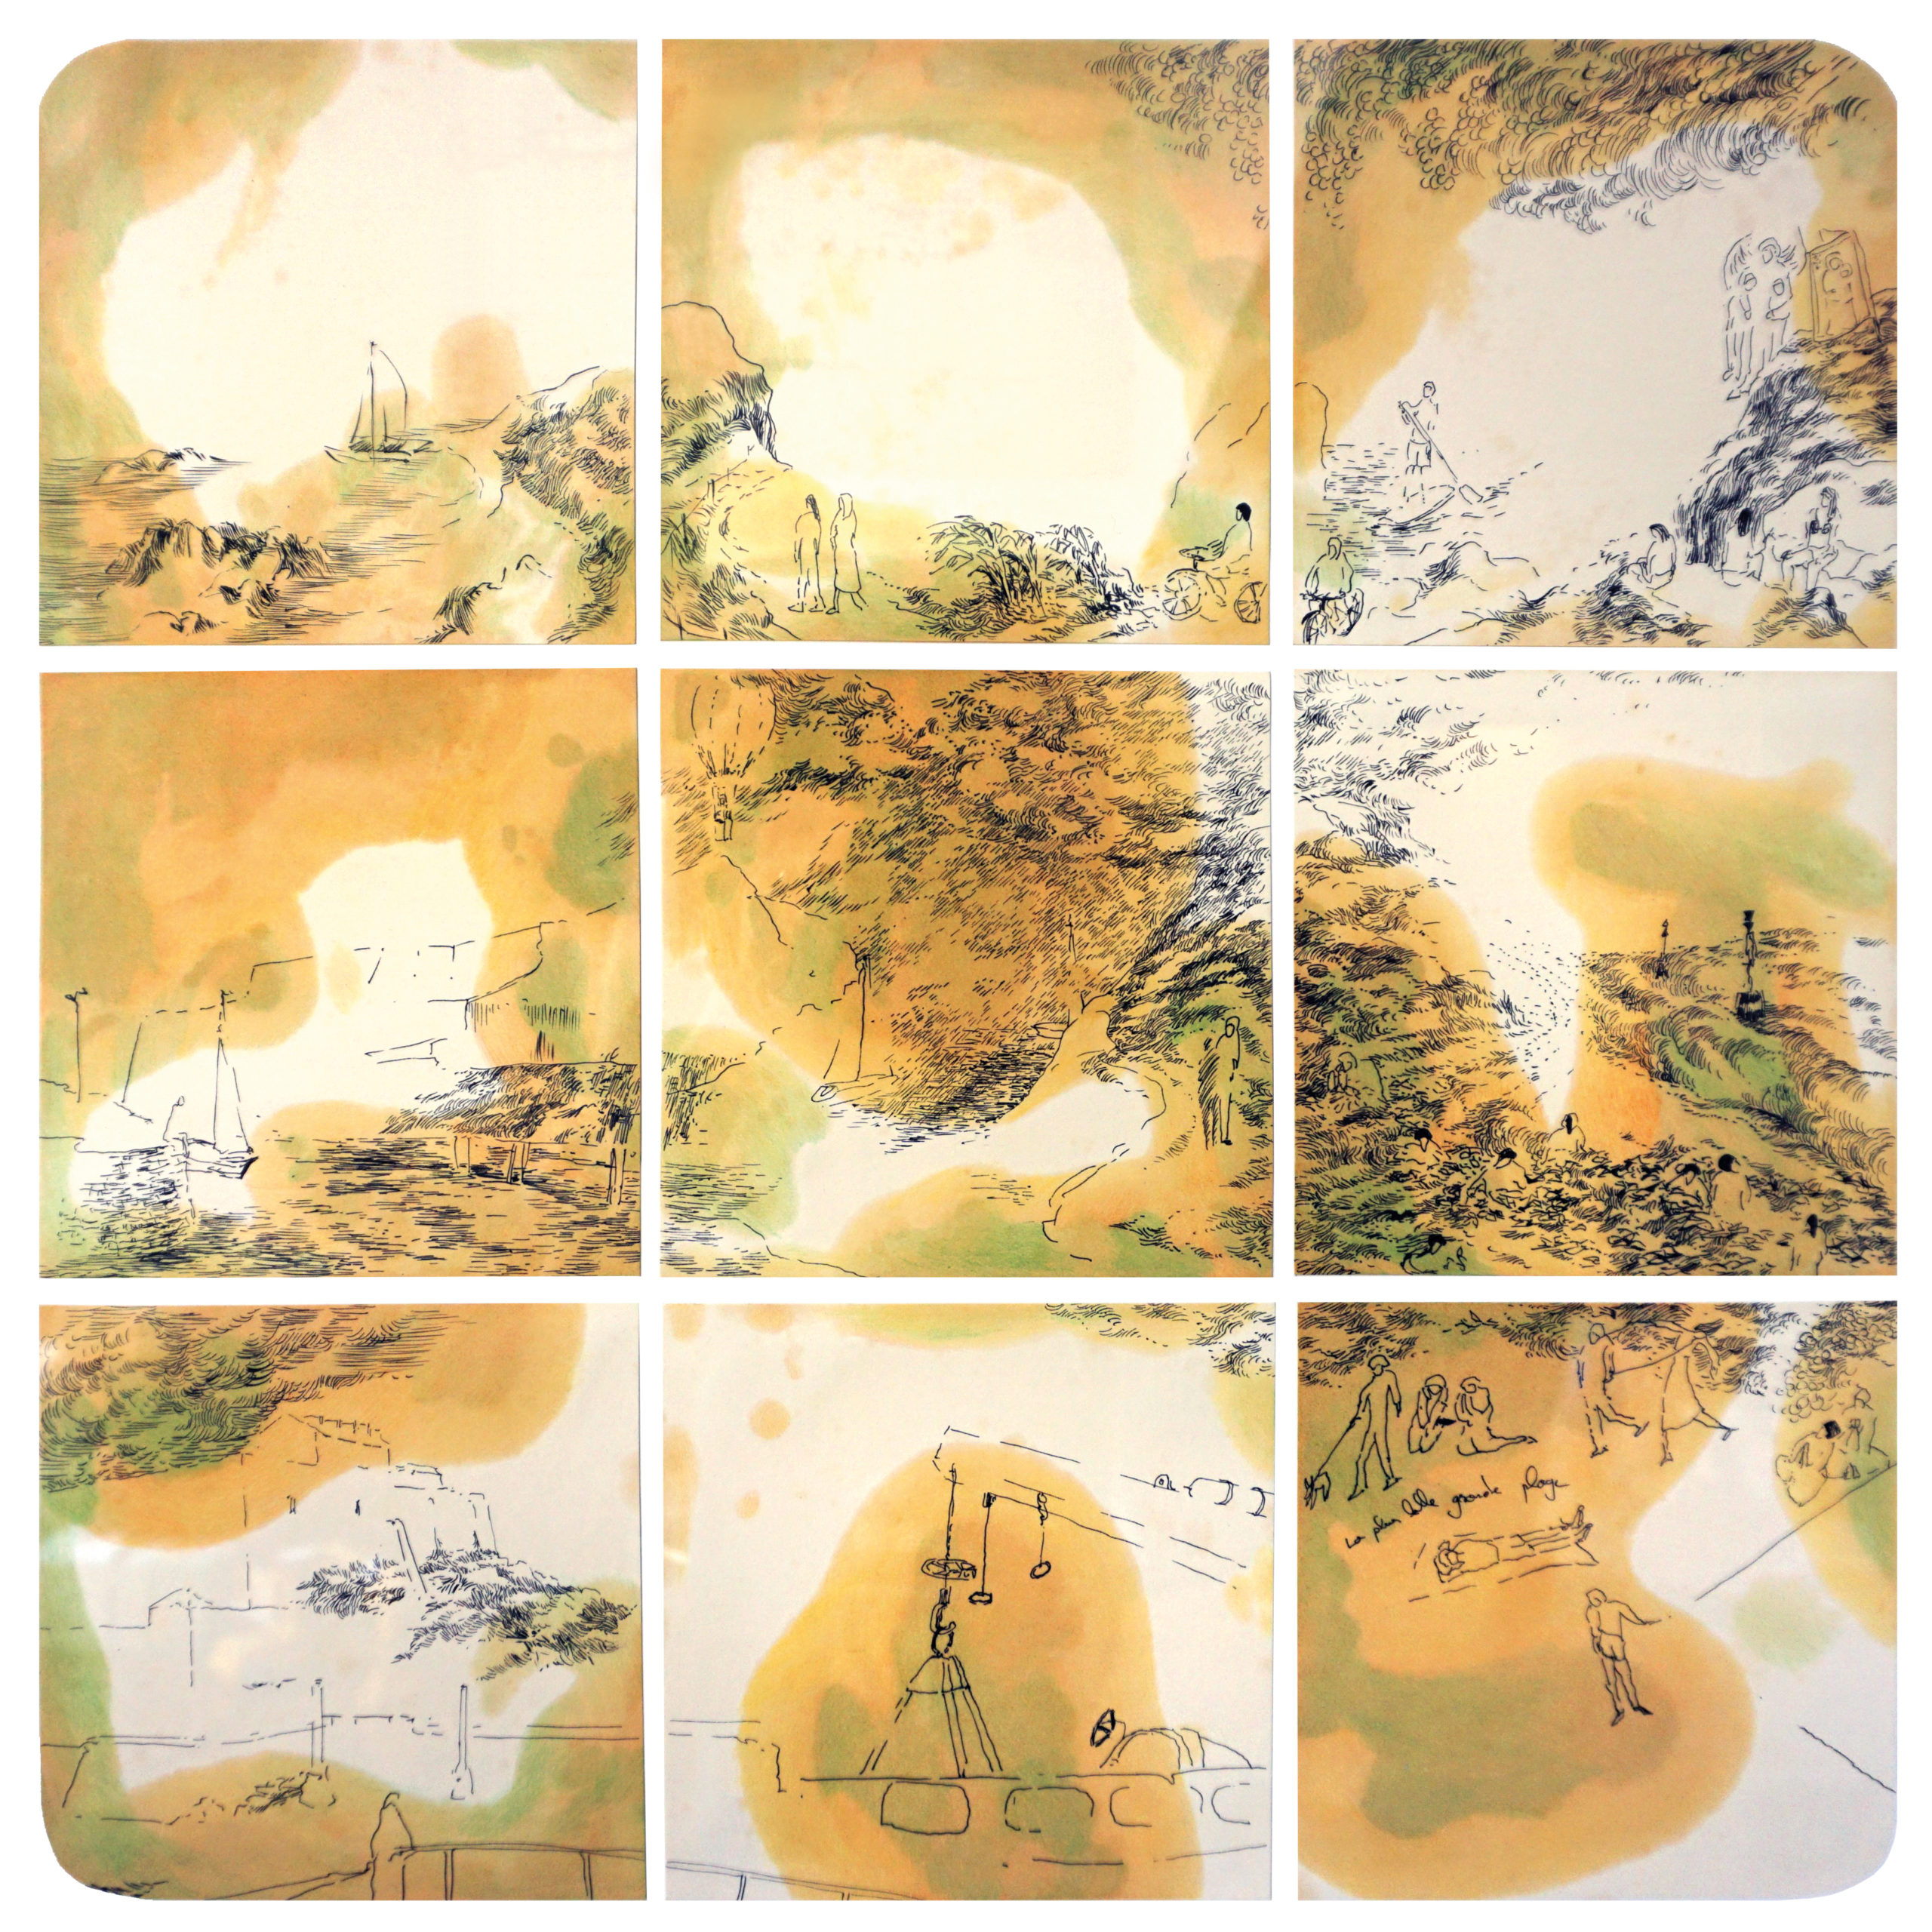 Les îles vertes, 2020. Encre et crayon sur papier, 60 x 60 cm.